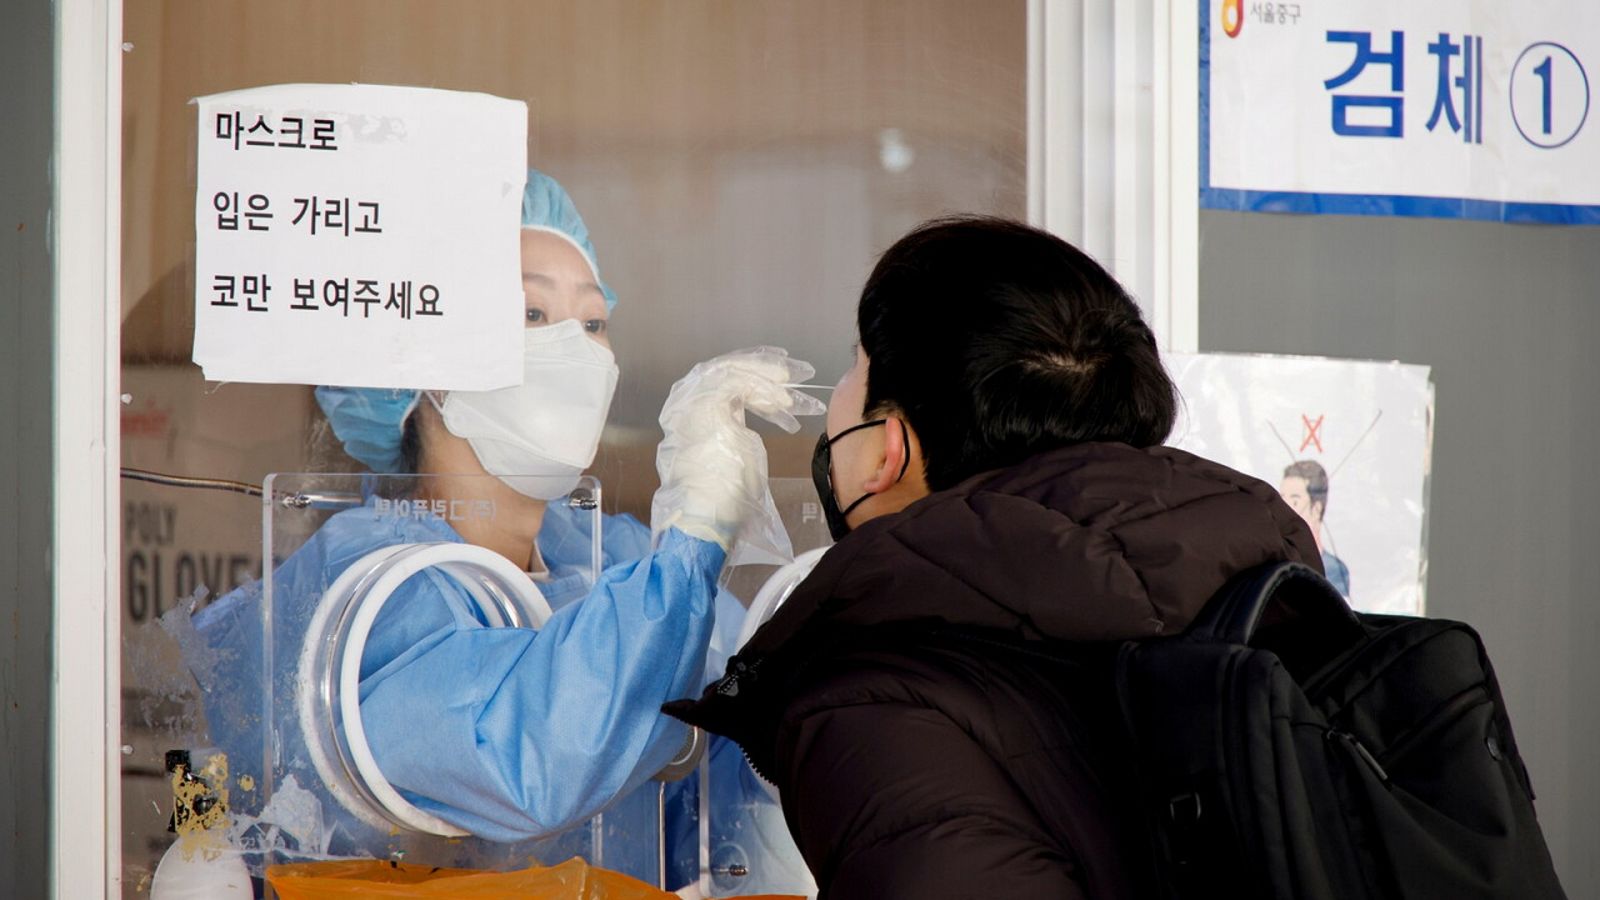 Pruebas de coronavirus en Seúl, Corea del Sur. REUTERS/Heo Ran